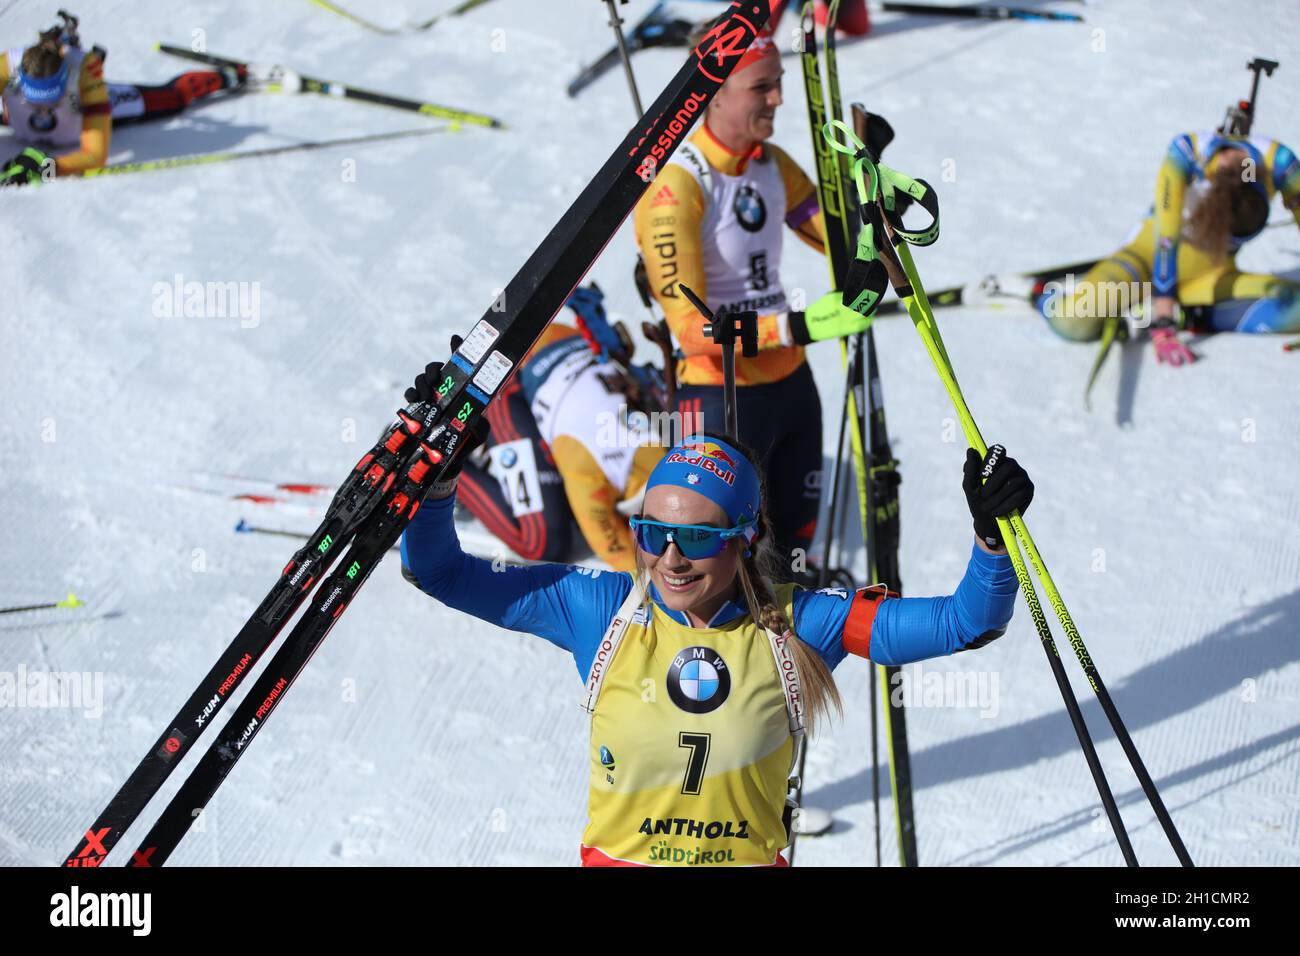 Dorothea Wierer (Italien) strahlt nach den WM-Titel mit der Sonne um die Wette bei der IBU Biathlon-Weltmeisterschaft Antholz 2020 Foto Stock